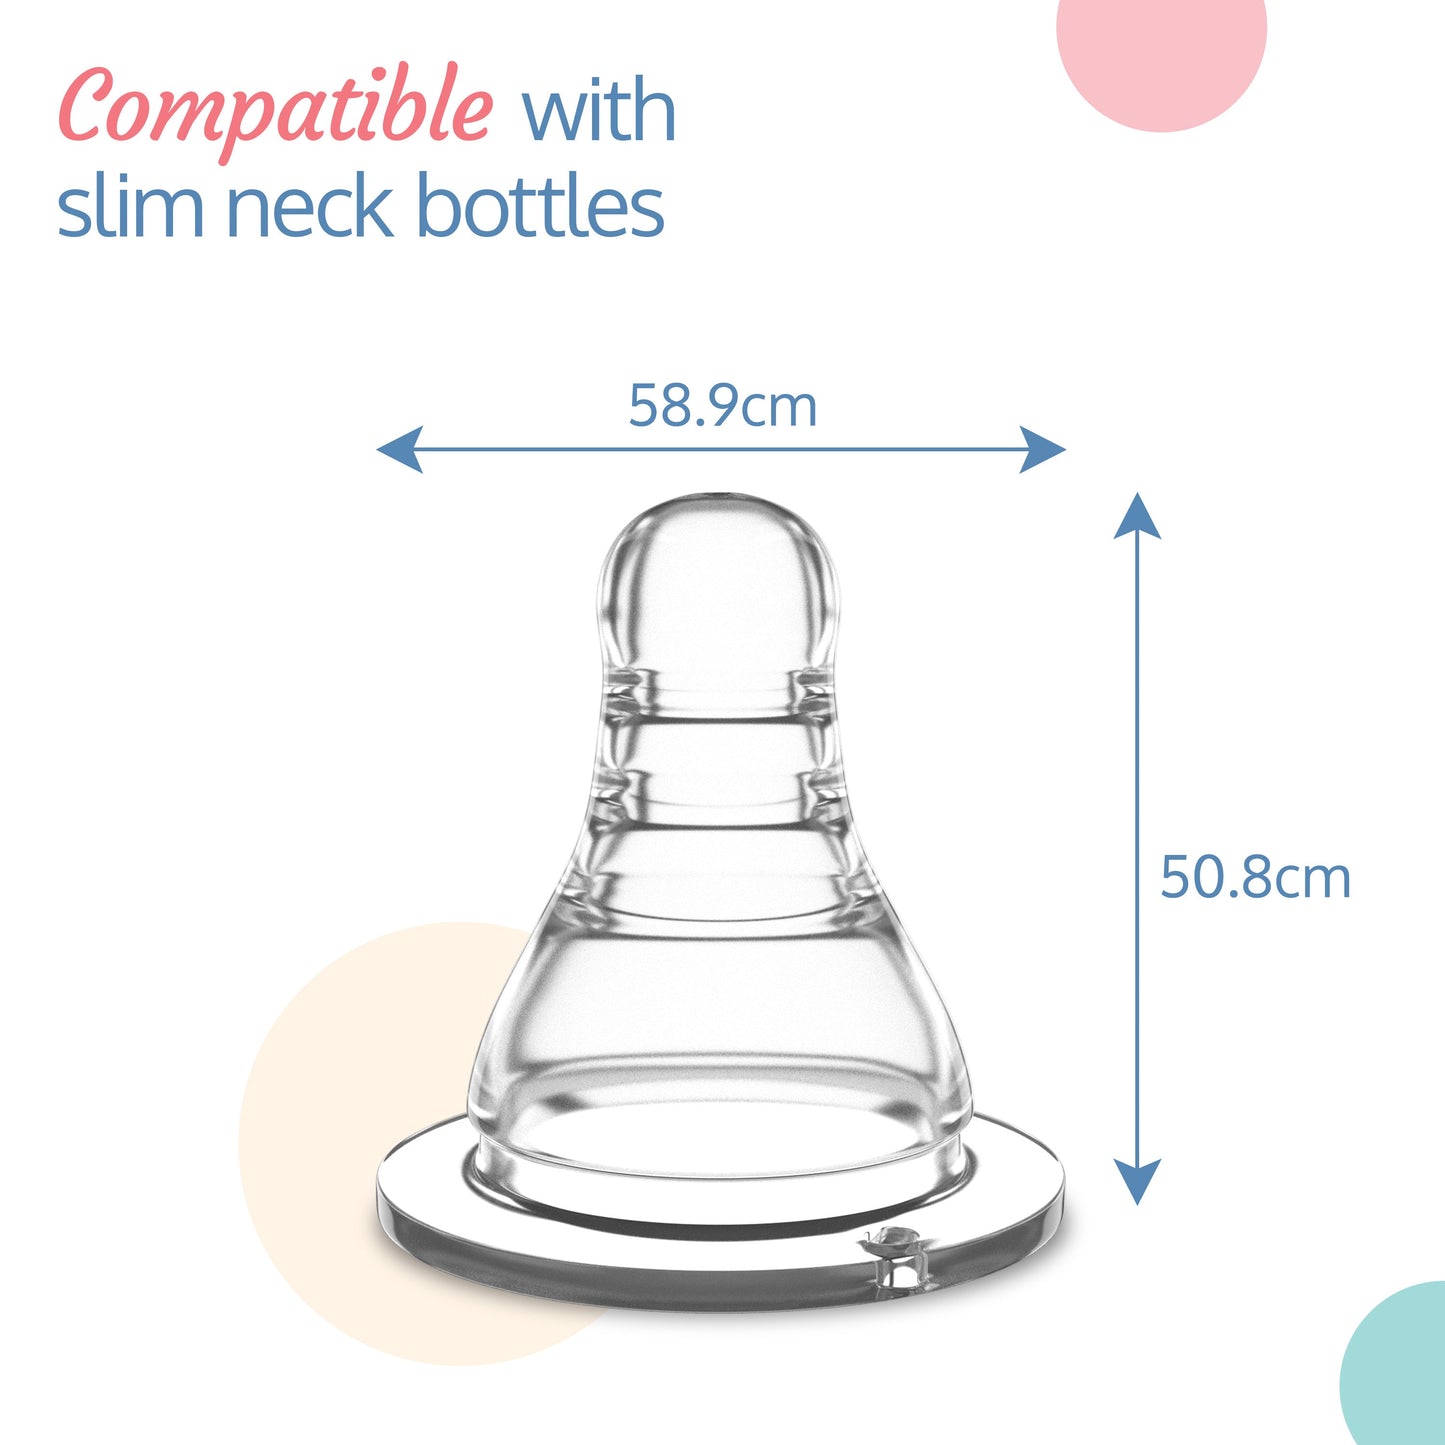 Anti-Colic Essential Teat/Nipple for Slim Neck Bottle, 2pcs, Medium Flow